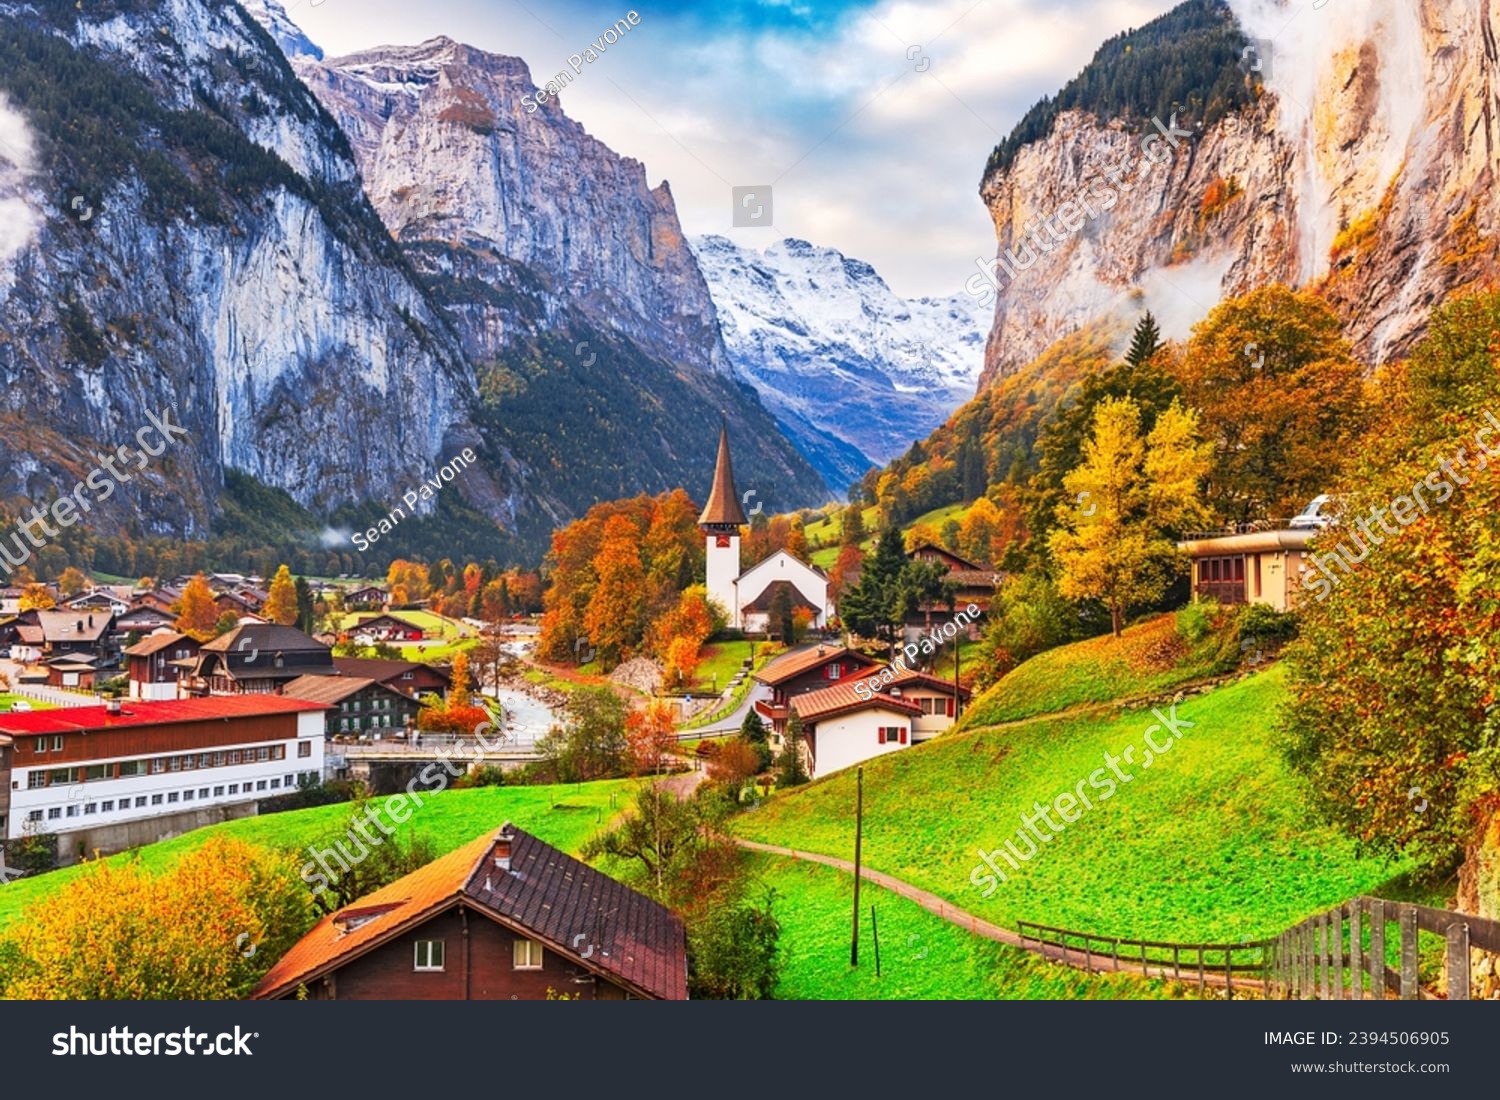 Lauterbrunnen, Switzerland beautiful morning during autumn season. #2394506905